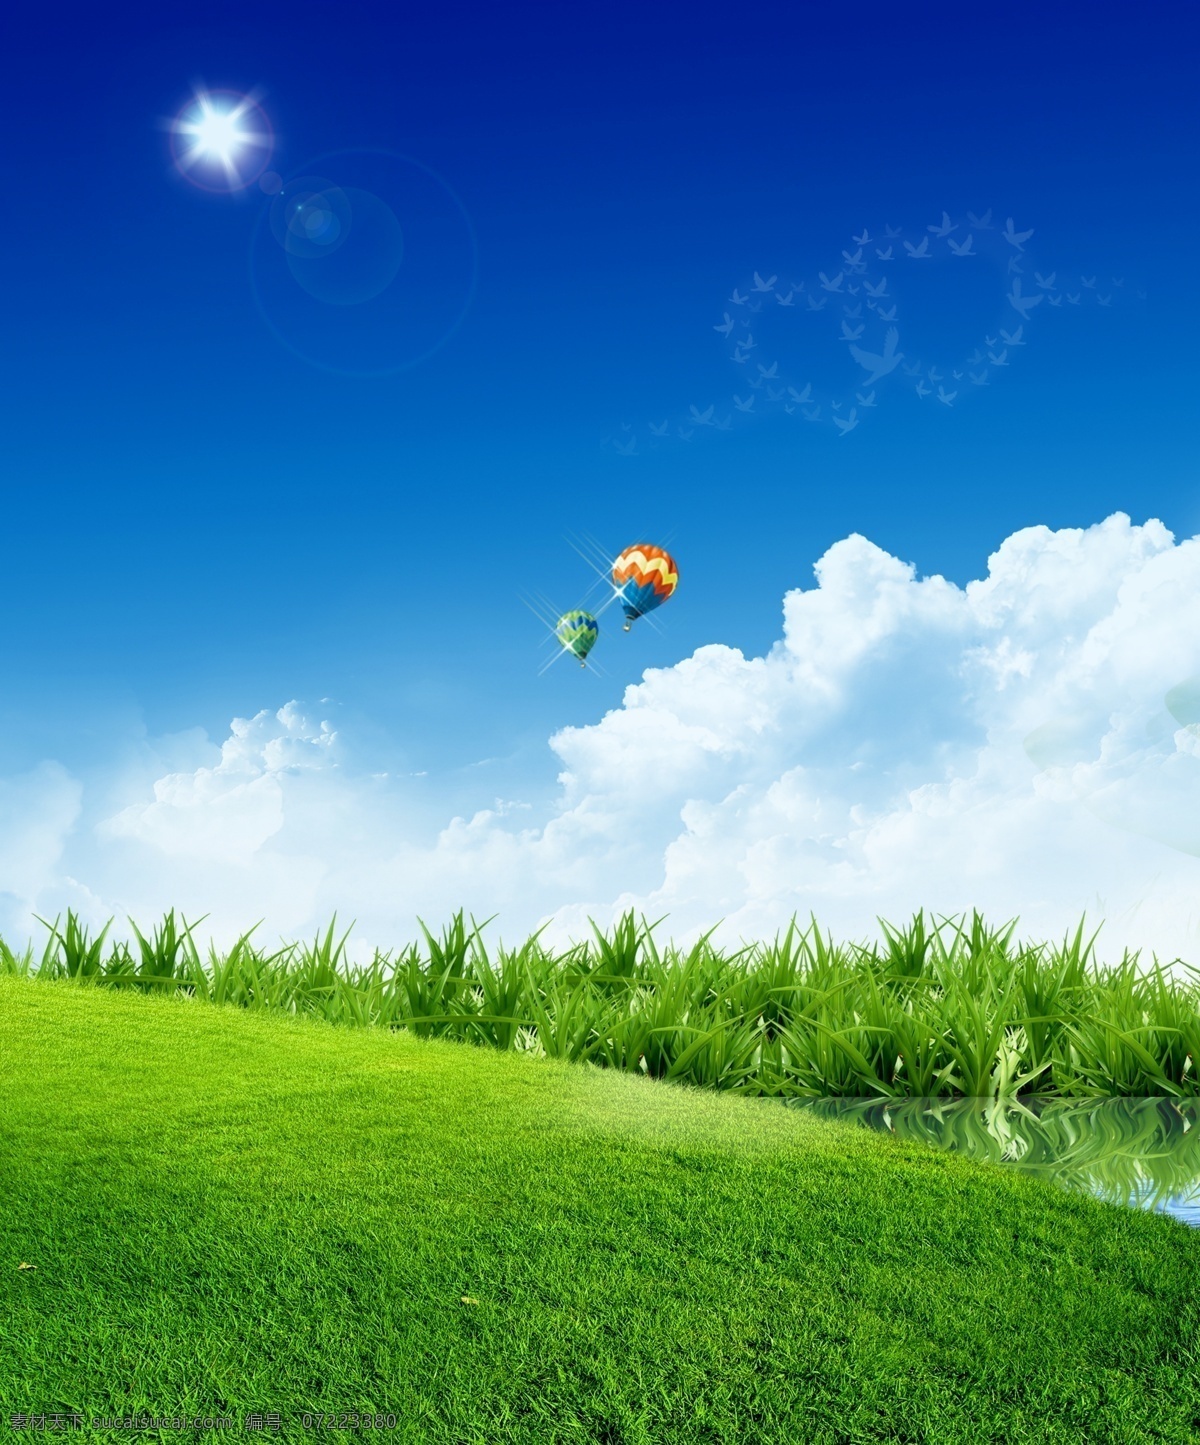 蓝天白云 蓝天 白云 商务 电子 热气球 草地 天空 广告设计模板 源文件